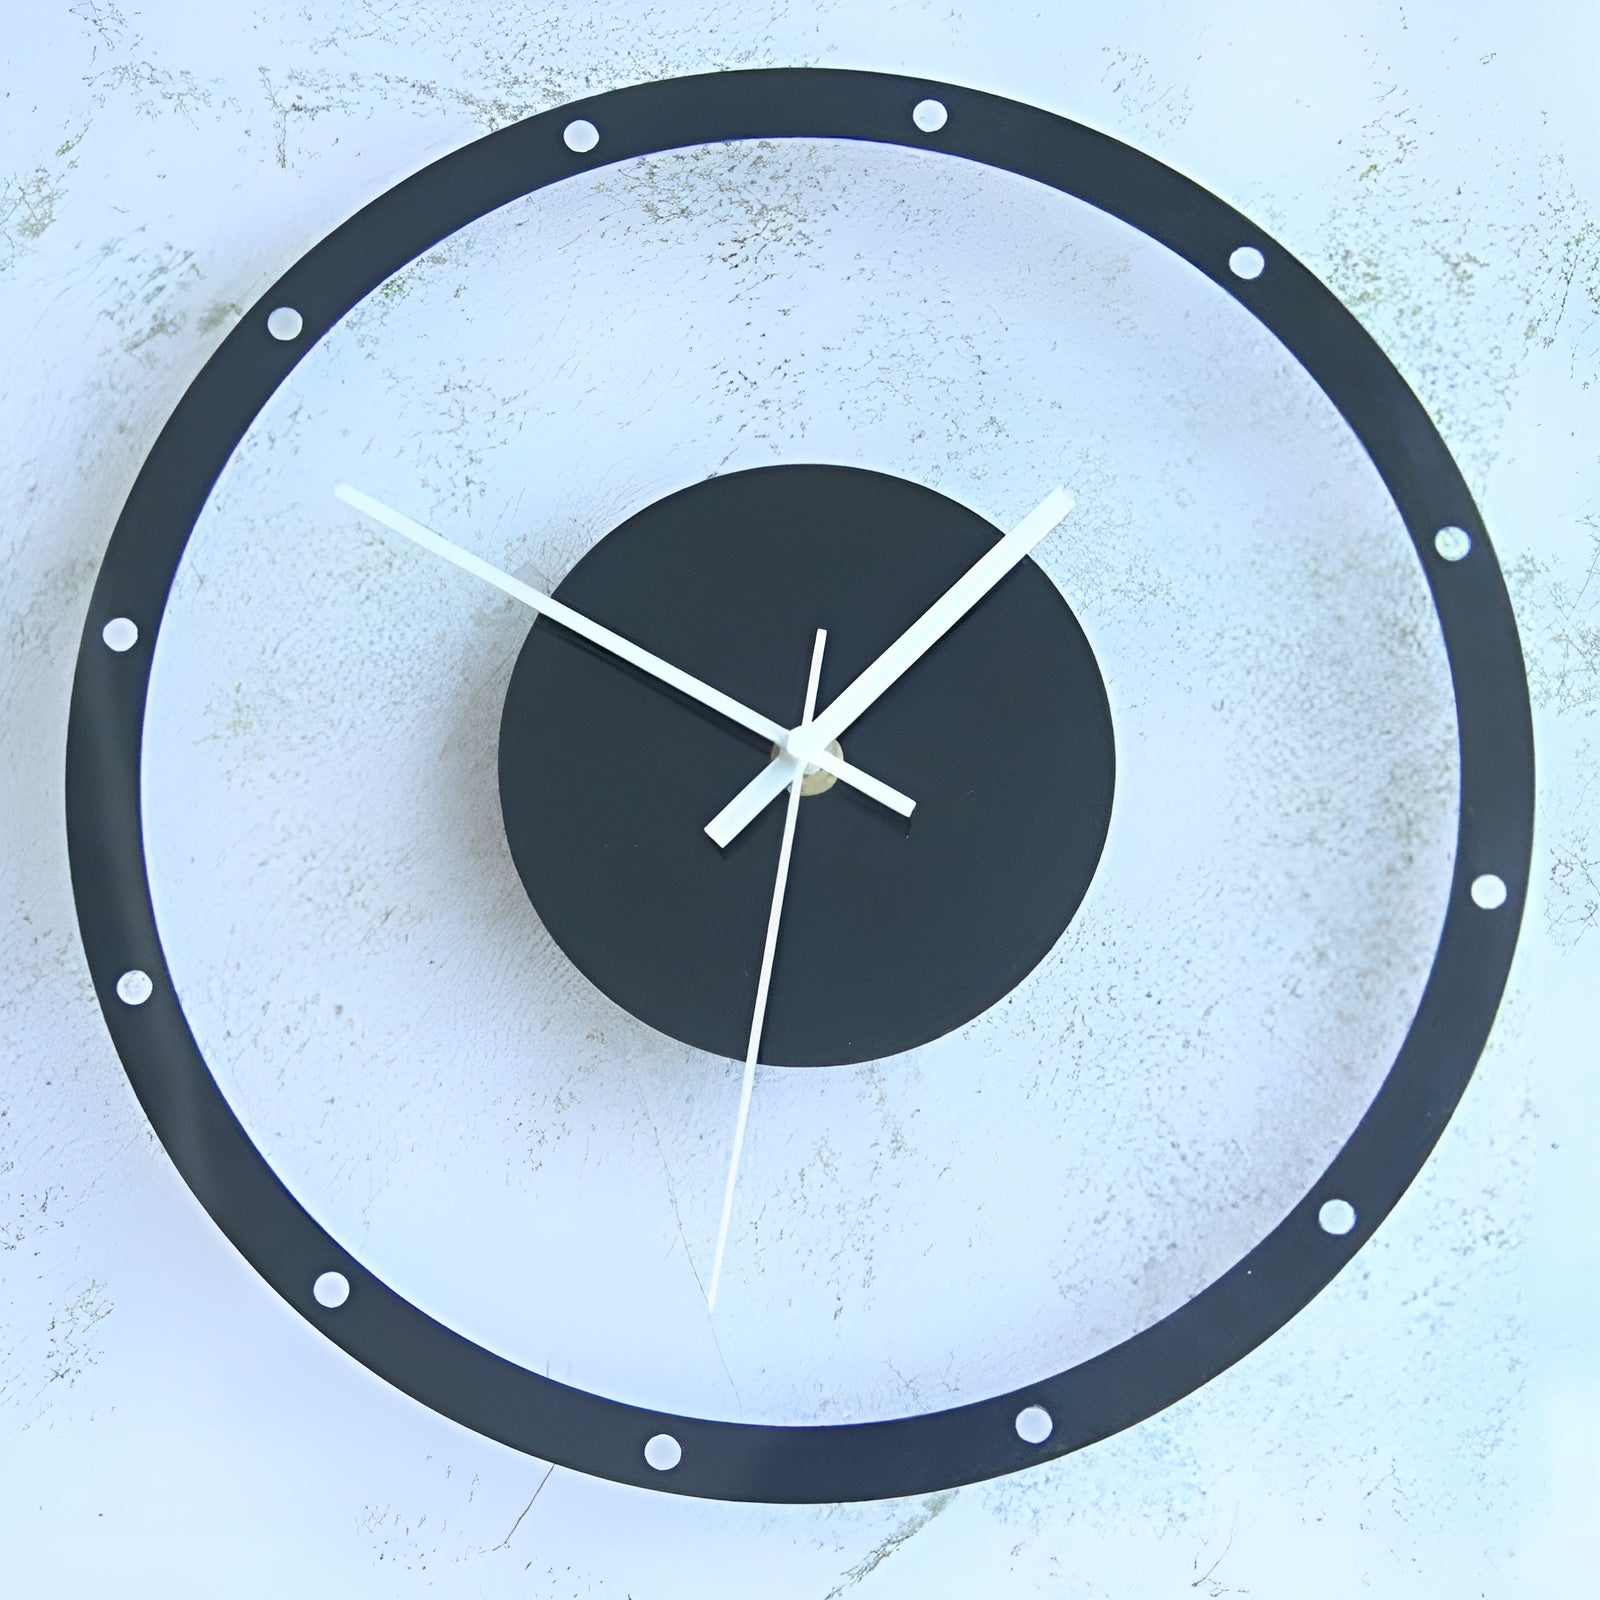 Orologio in Stile Futuristico - Modello cerchi - Lancette precise - Ideale per l'arredo.